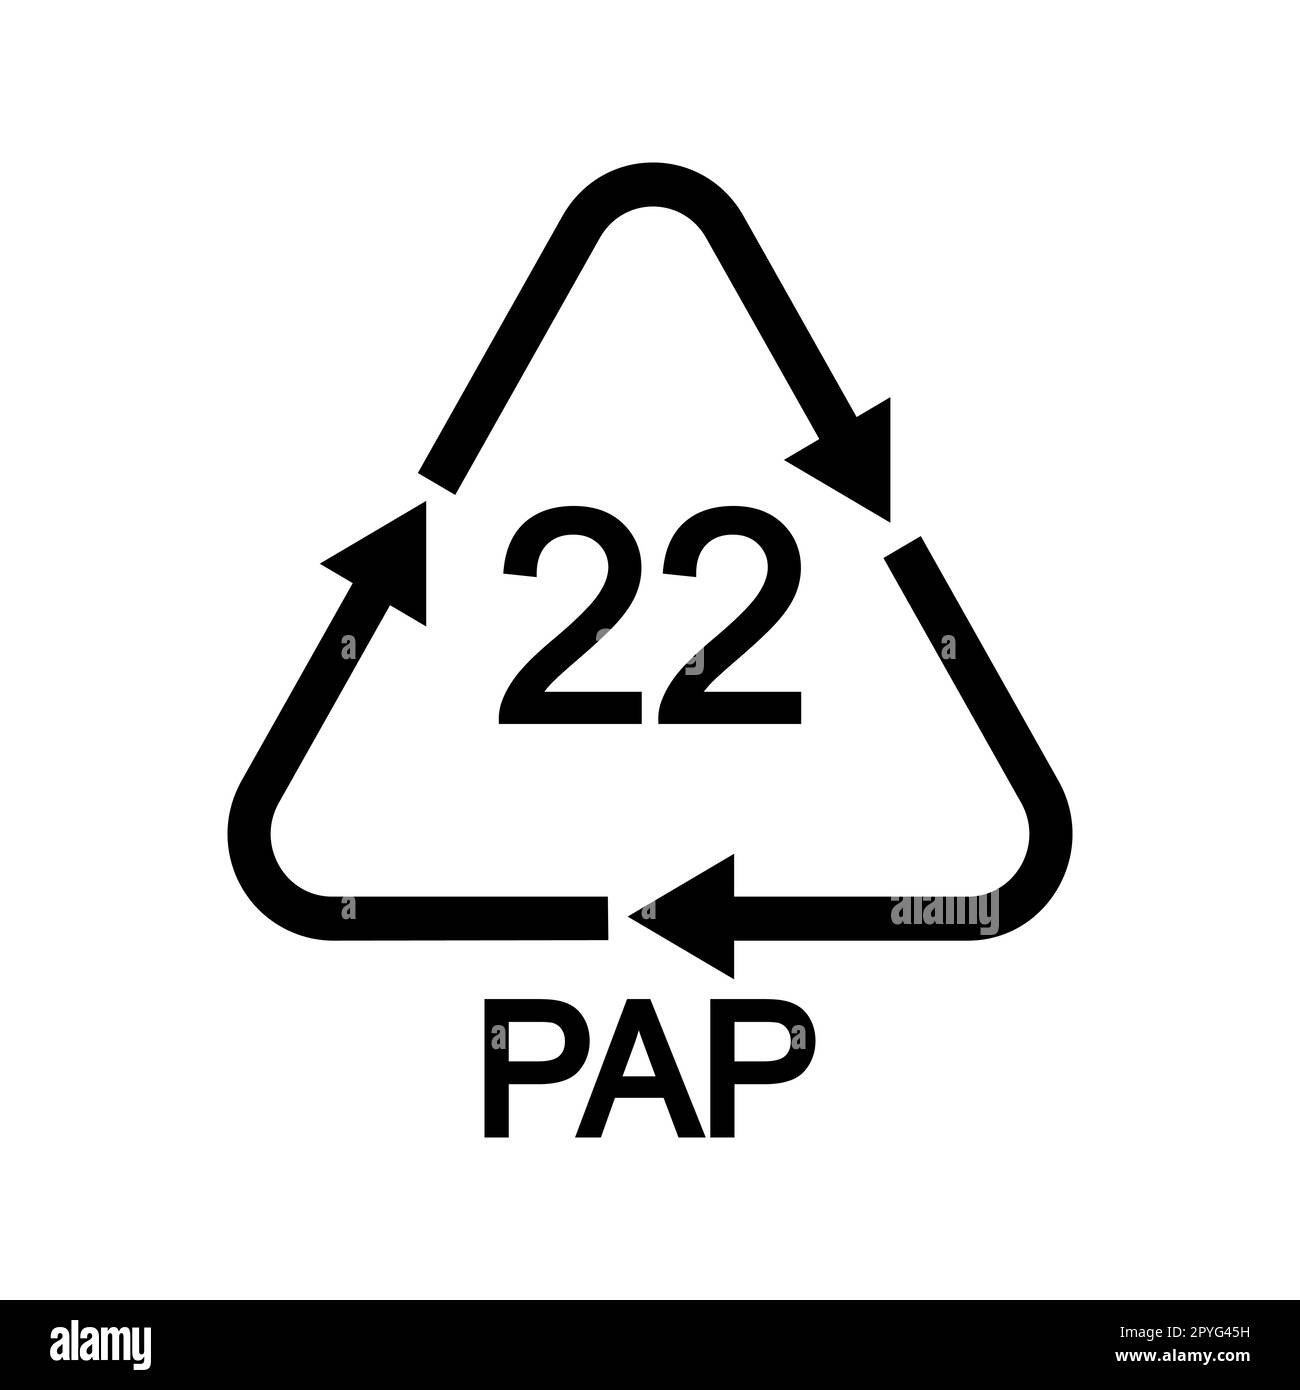 Schild für normales Recycling von Papier. 22 PAP in dreieckiger Form mit Pfeilen wie Zeitungen, Bücher, Zeitschriften, Geschenkpapier, Tapeten, Wiederverwendbare Papierbeutel Stock Vektor